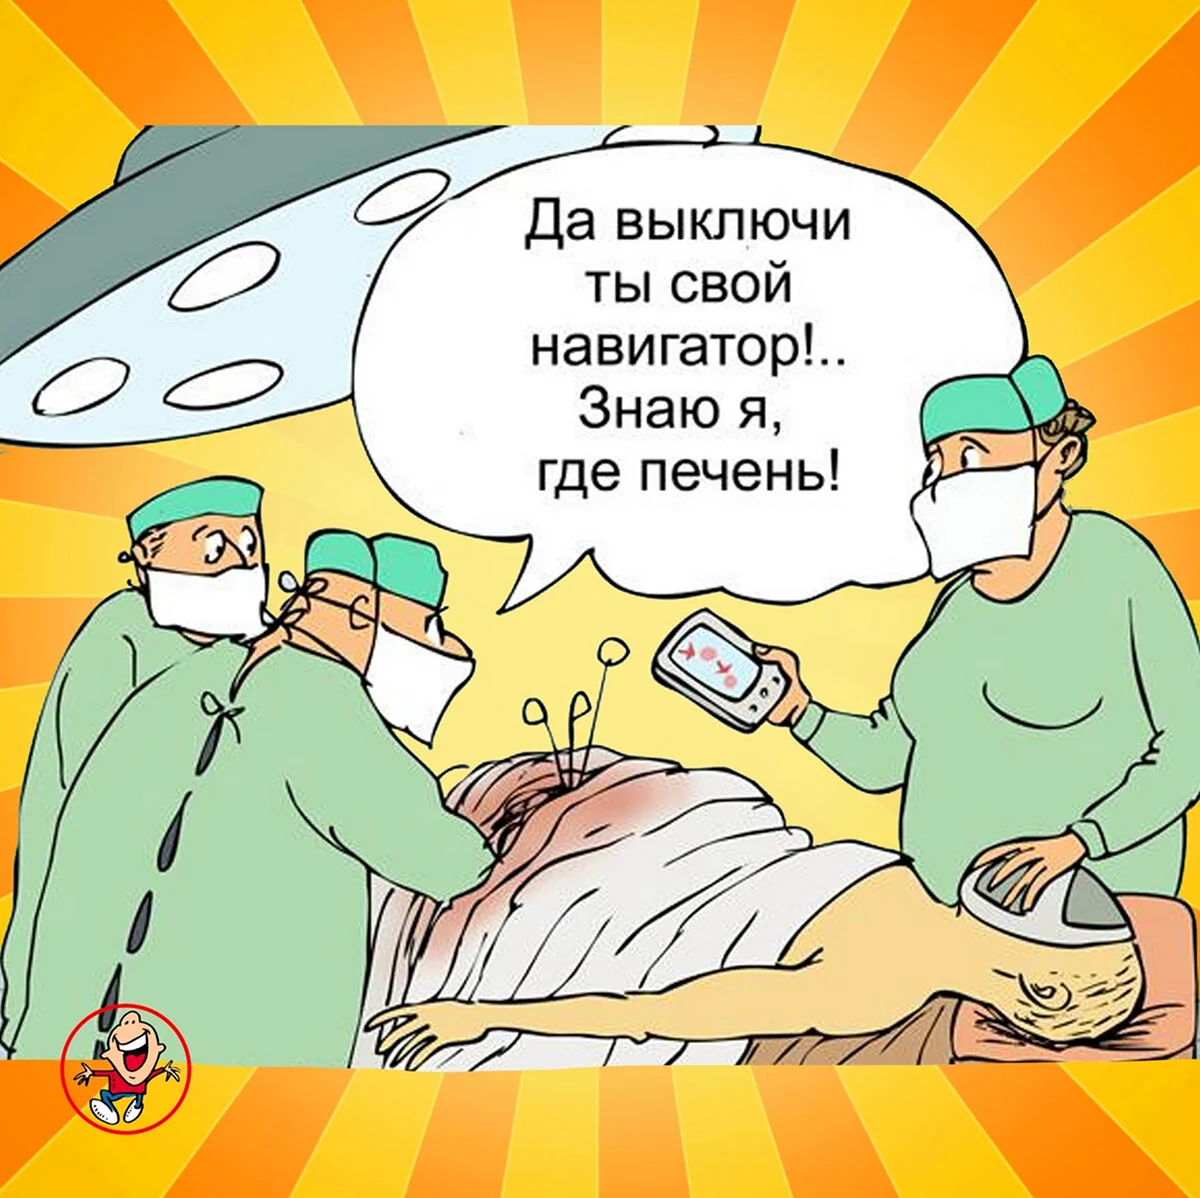 Анекдоты про хирургов. Прикольная картинка